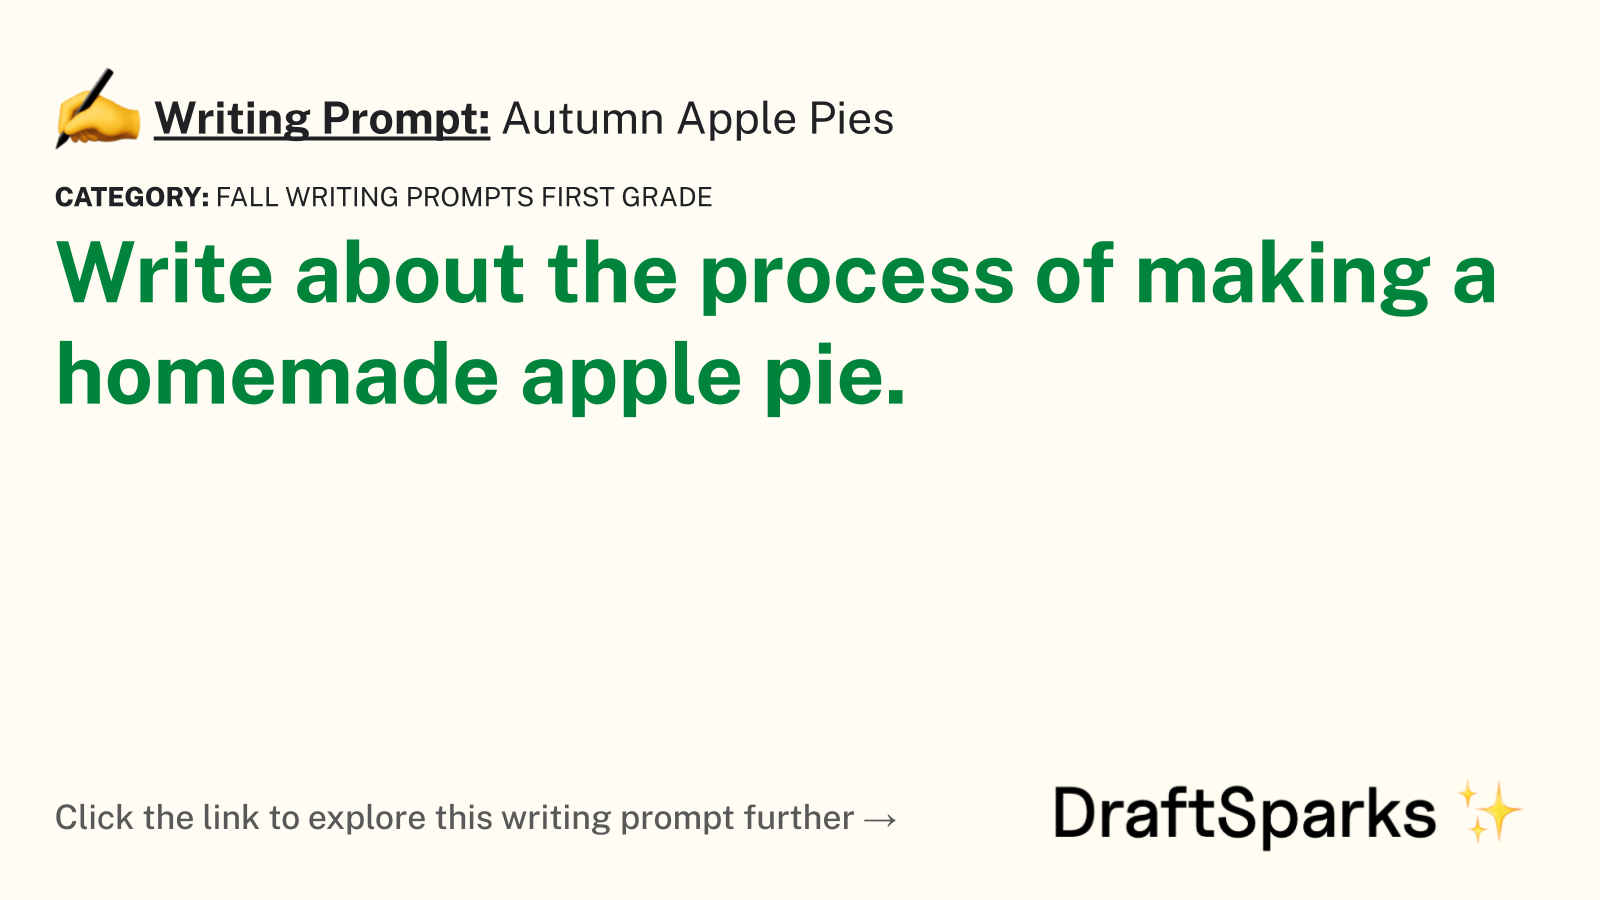 Autumn Apple Pies